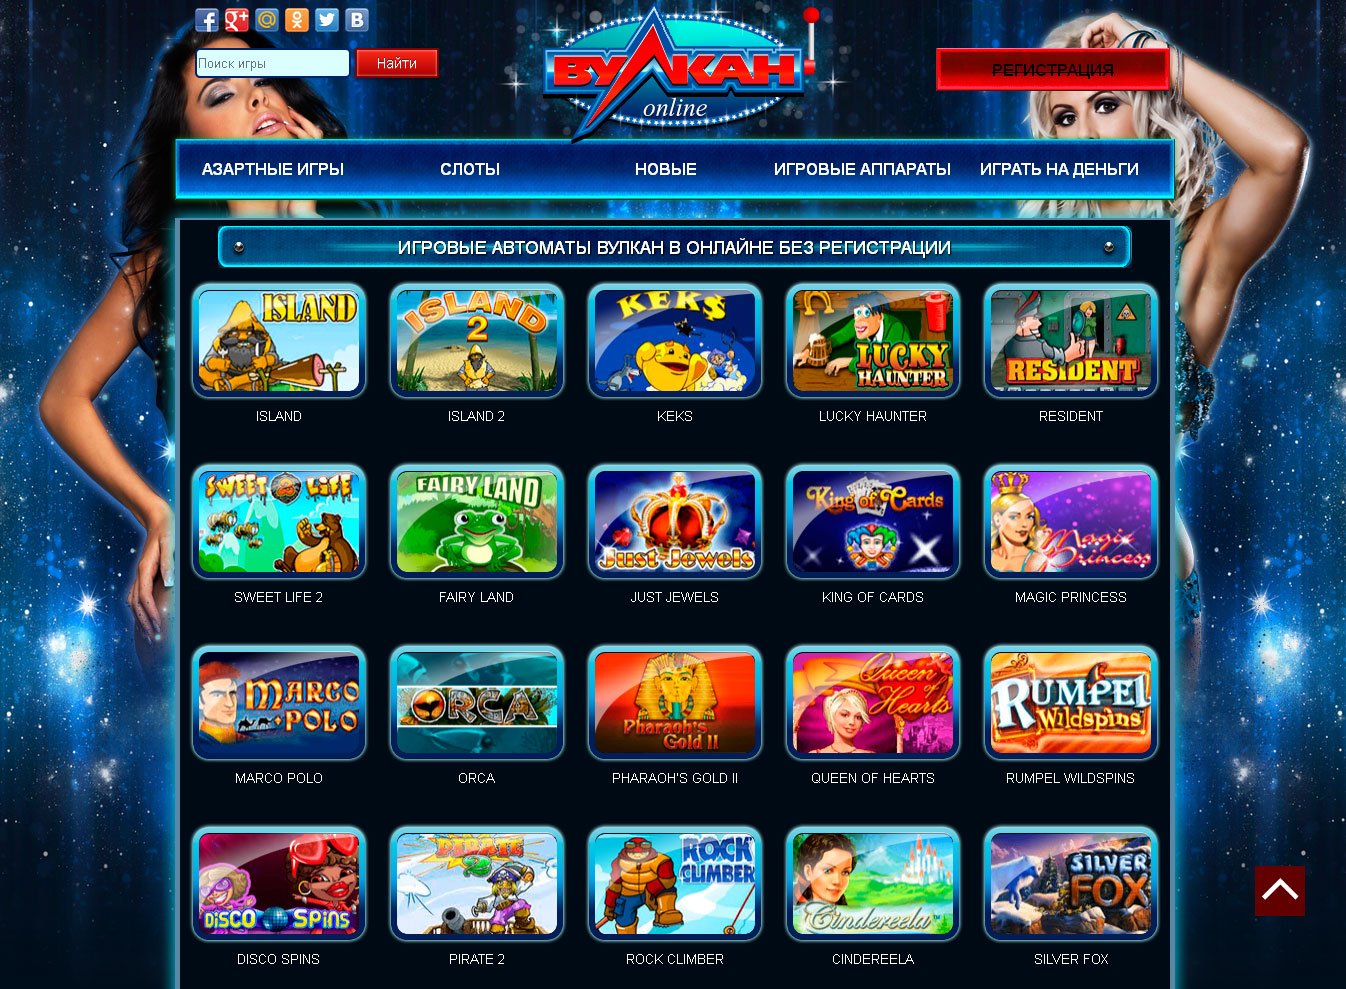 Казино вулкан пенза ограбление казино 2012 смотреть онлайн hd